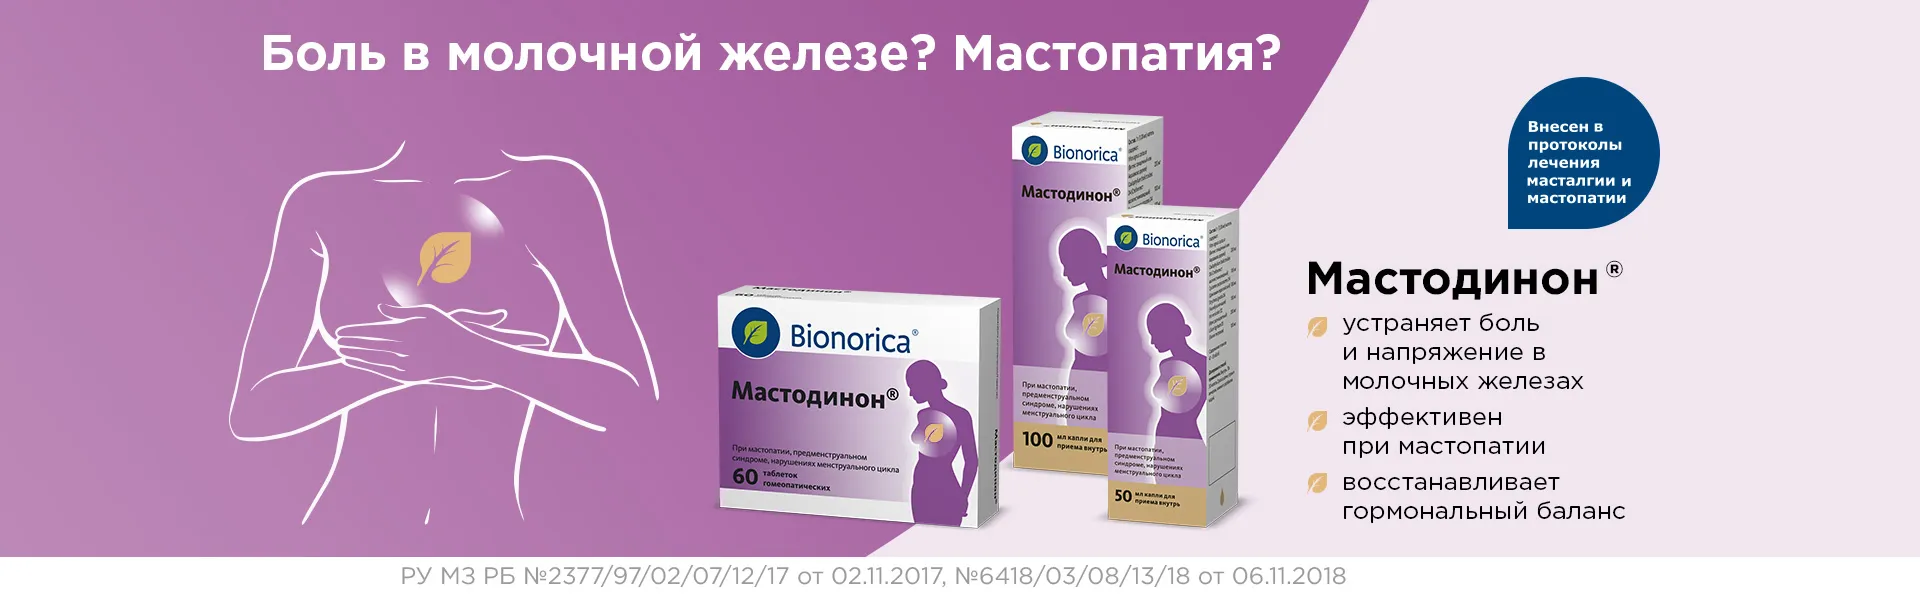 Мастодинон для лечения Мастопатии и Мастальгии